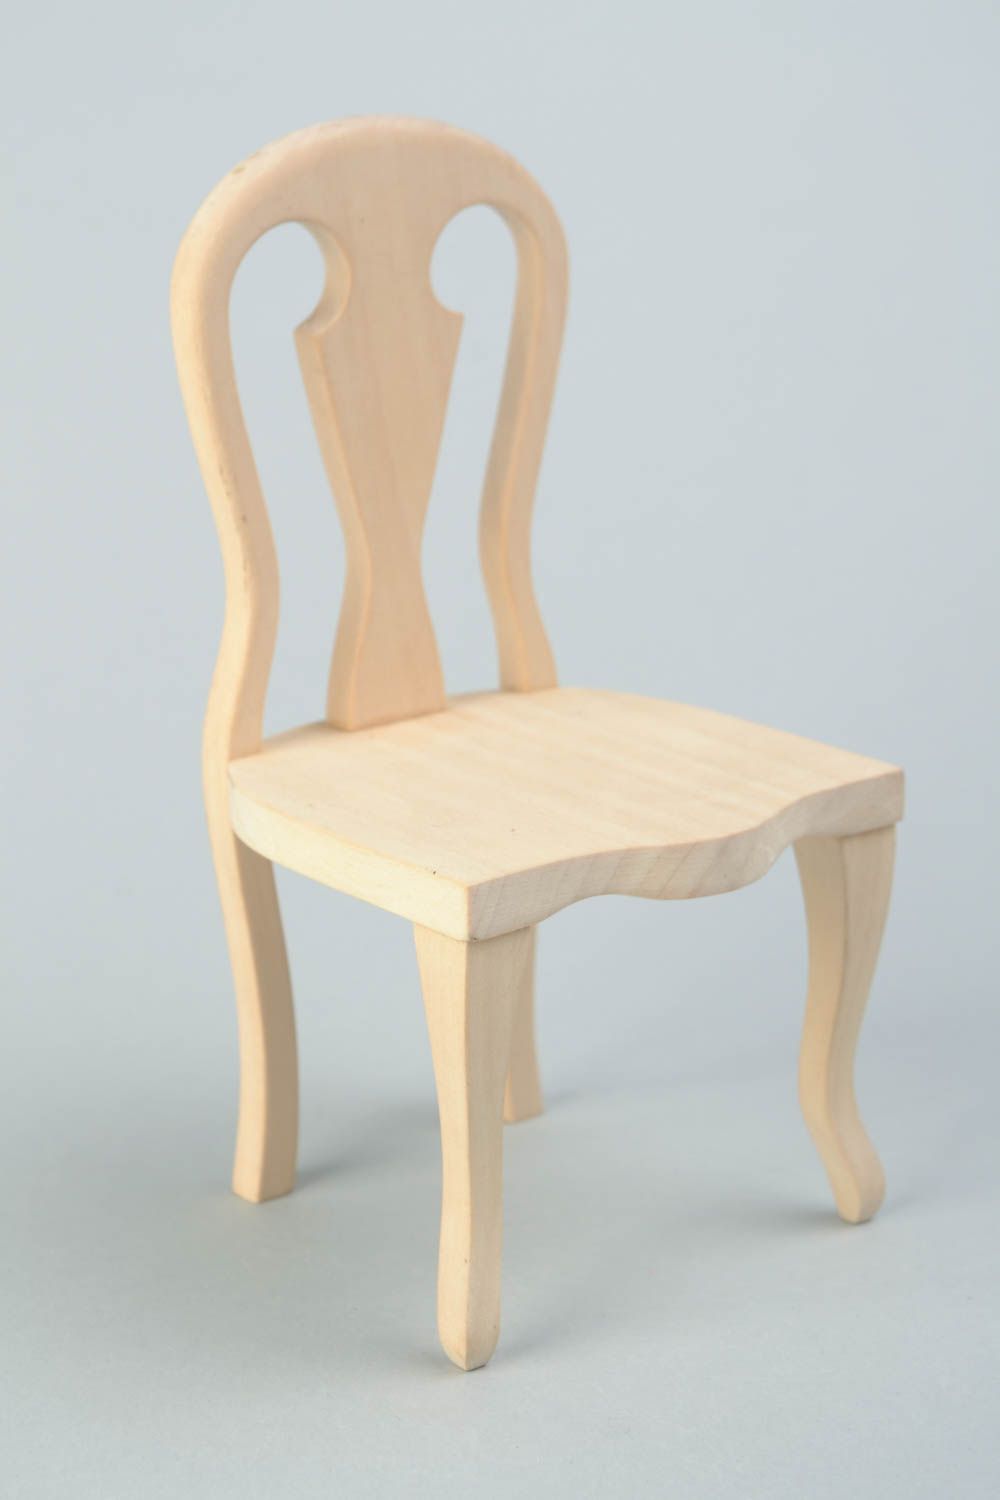 Деревянный стул для куклы заготовка под роспись или декупаж ручной работы фото 3